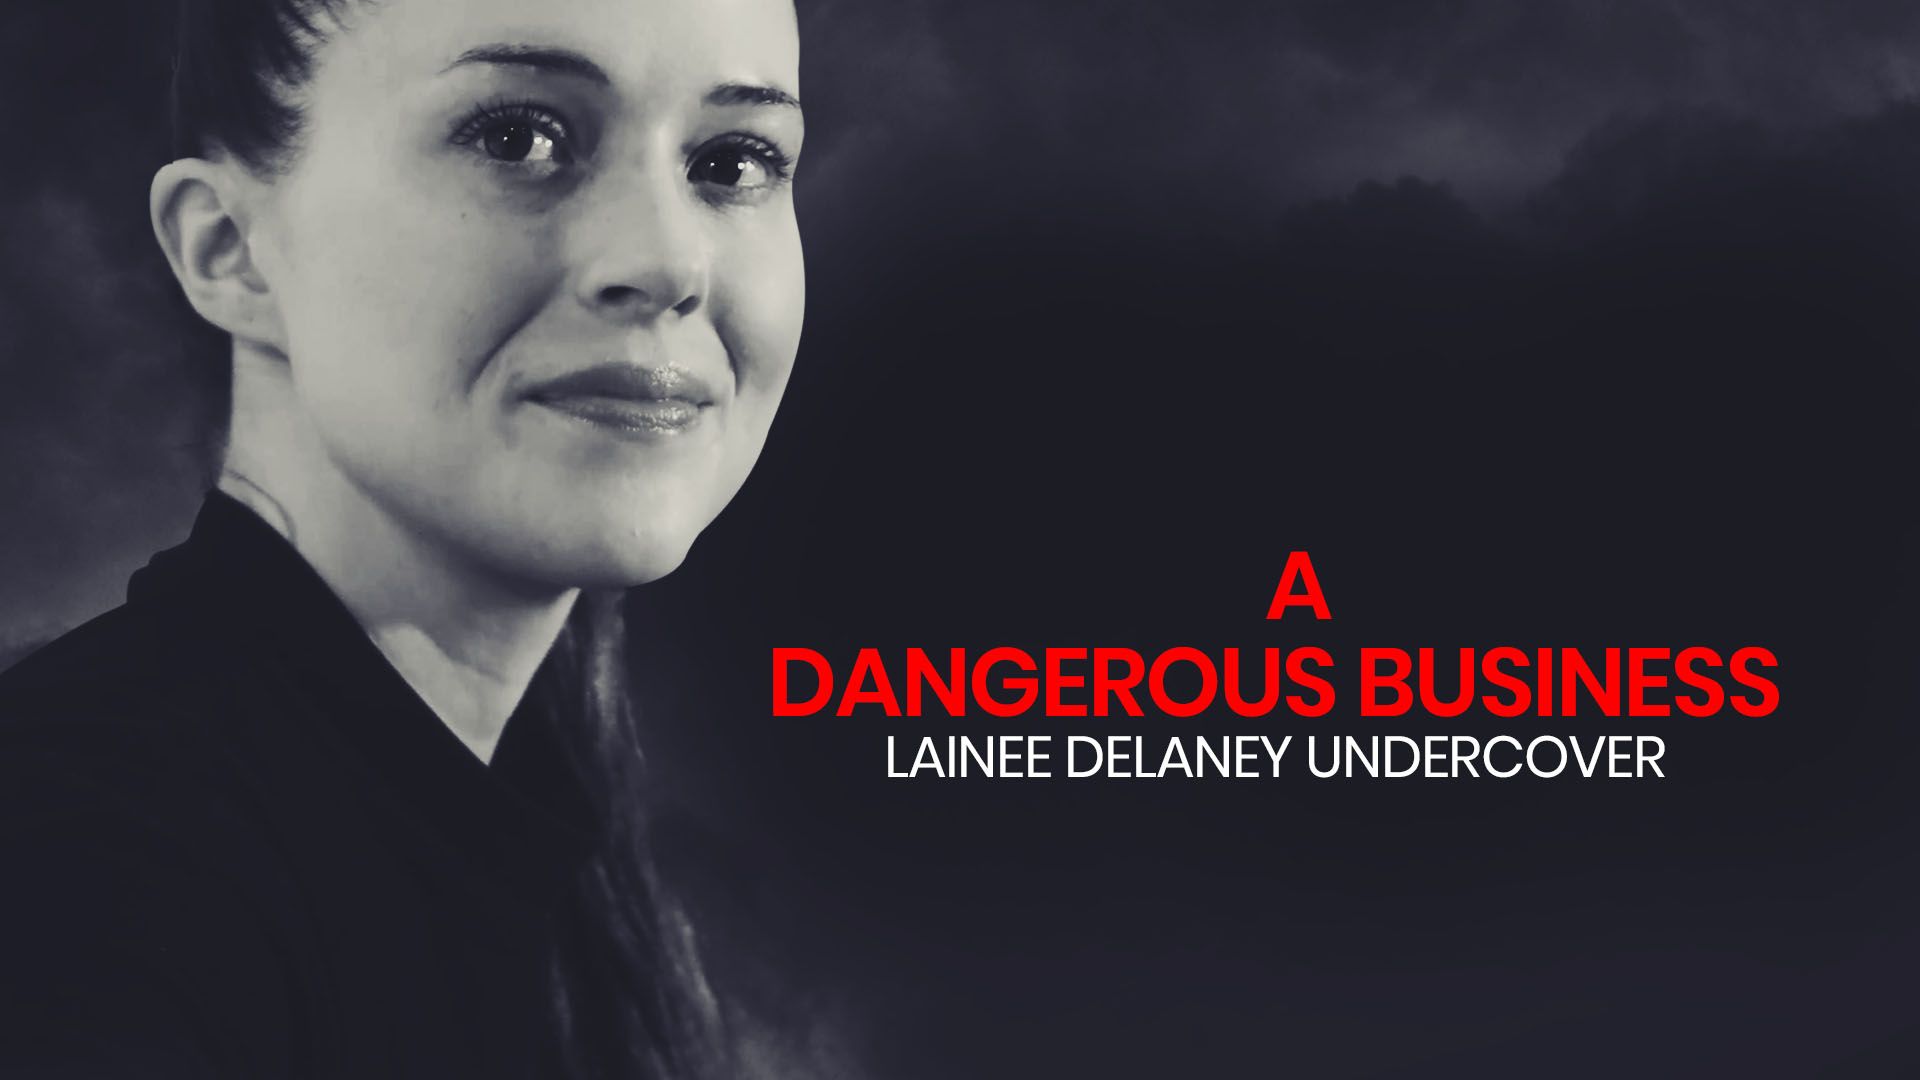 A Dangerous Business: Lainee Delaney Undercover Backdrop